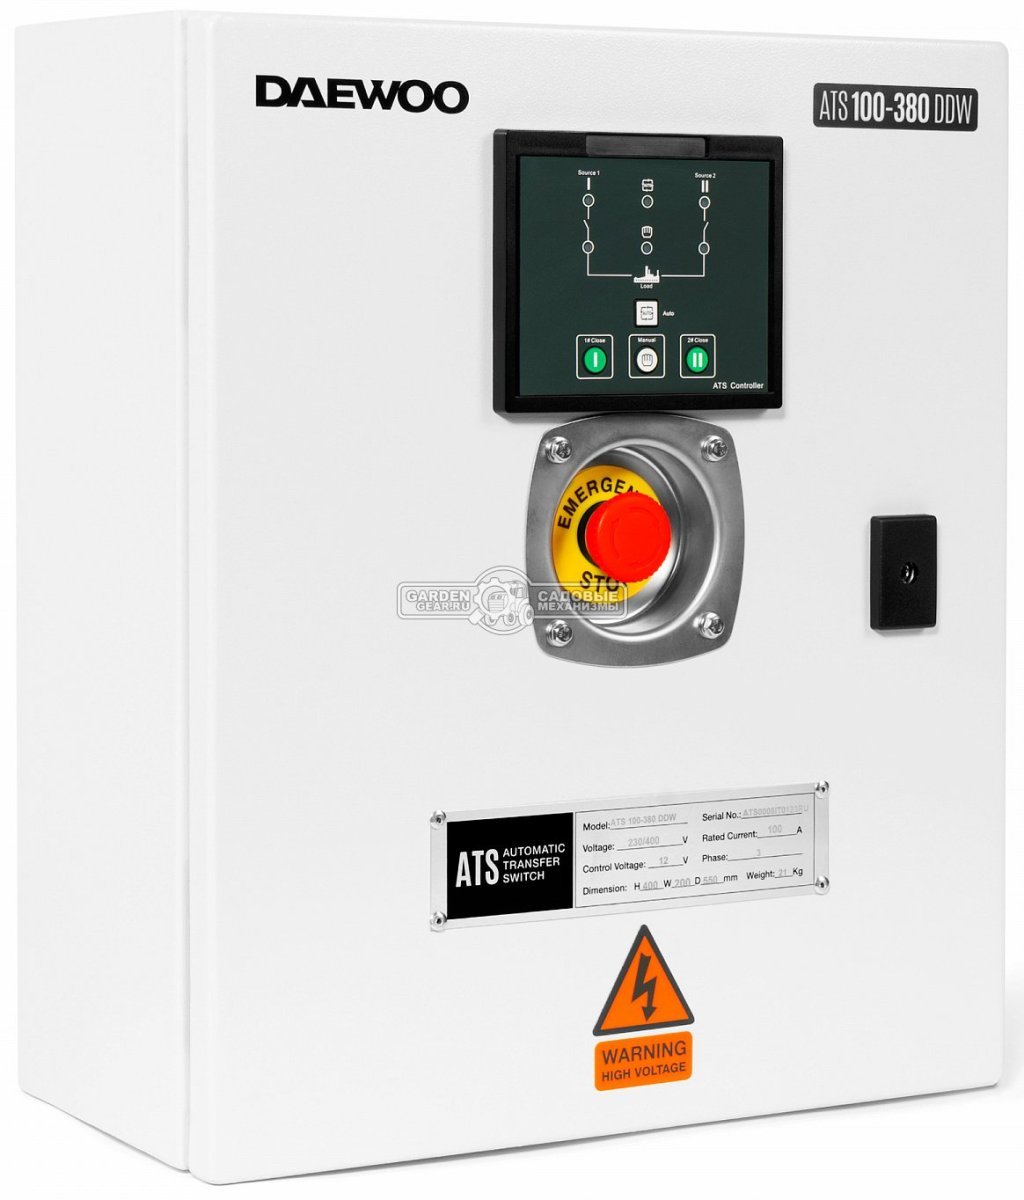 Блок автоматики Daewoo ATS 100-380 DDW для дизельных генераторов (400В, 3x110А, длина кабеля 15 м, вес 12 кг.)